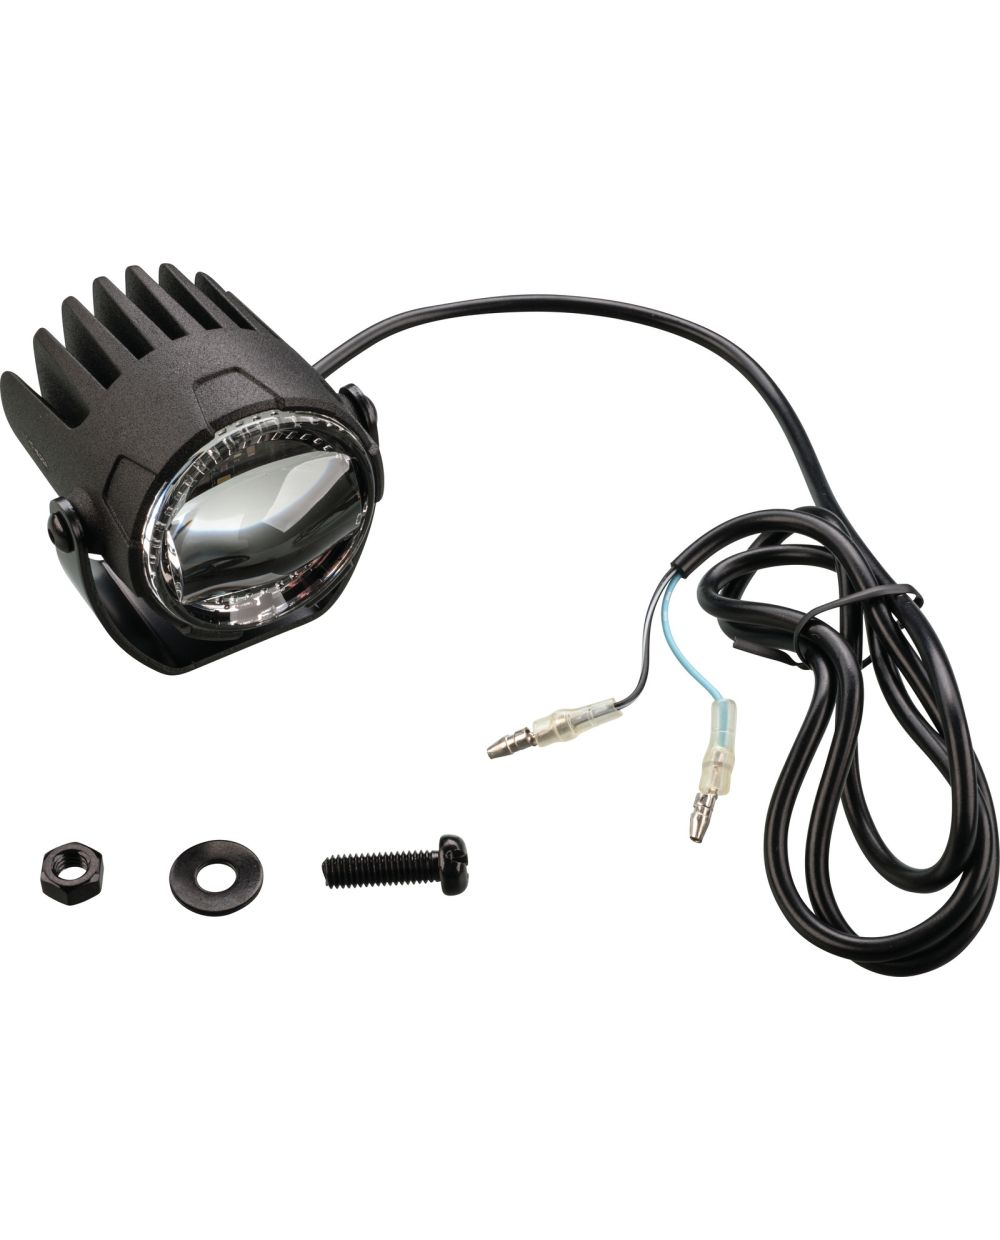 LED-Nebelscheinwerfer 12V, Abm. ca. 55x70mm, matt-schwarzes  Aluminium-Gehäuse, e-geprüft, 1 Stück inkl. Halter